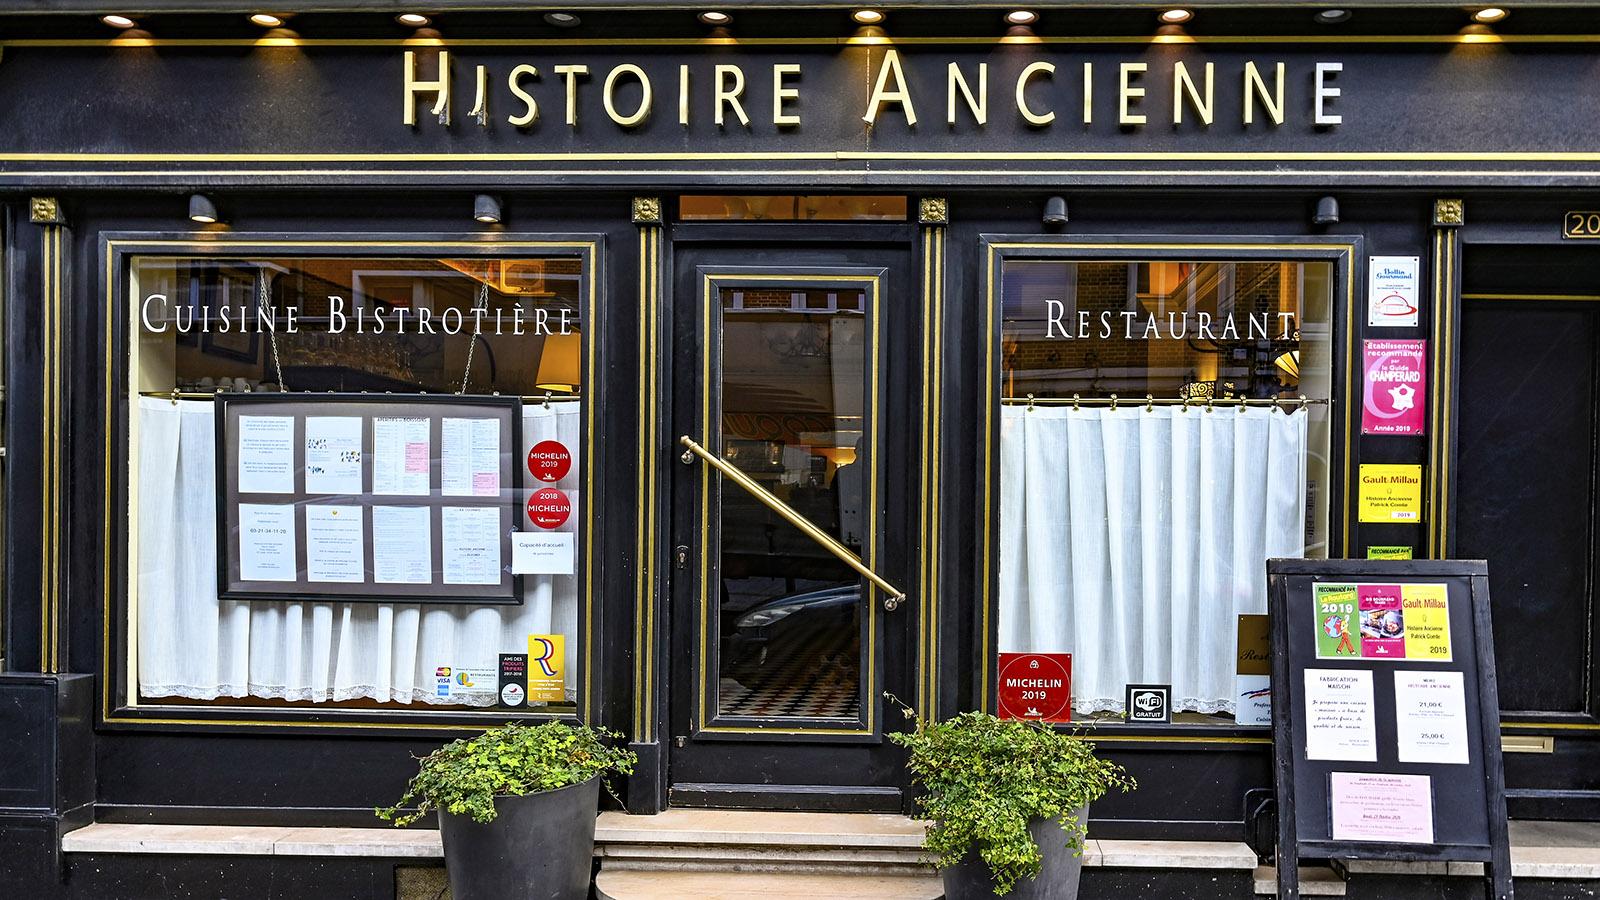 Cuisine Bistrotière nennt die Fensteraufschrift die Küche der Histoire Ancienne. Foto: Hilke Maunder